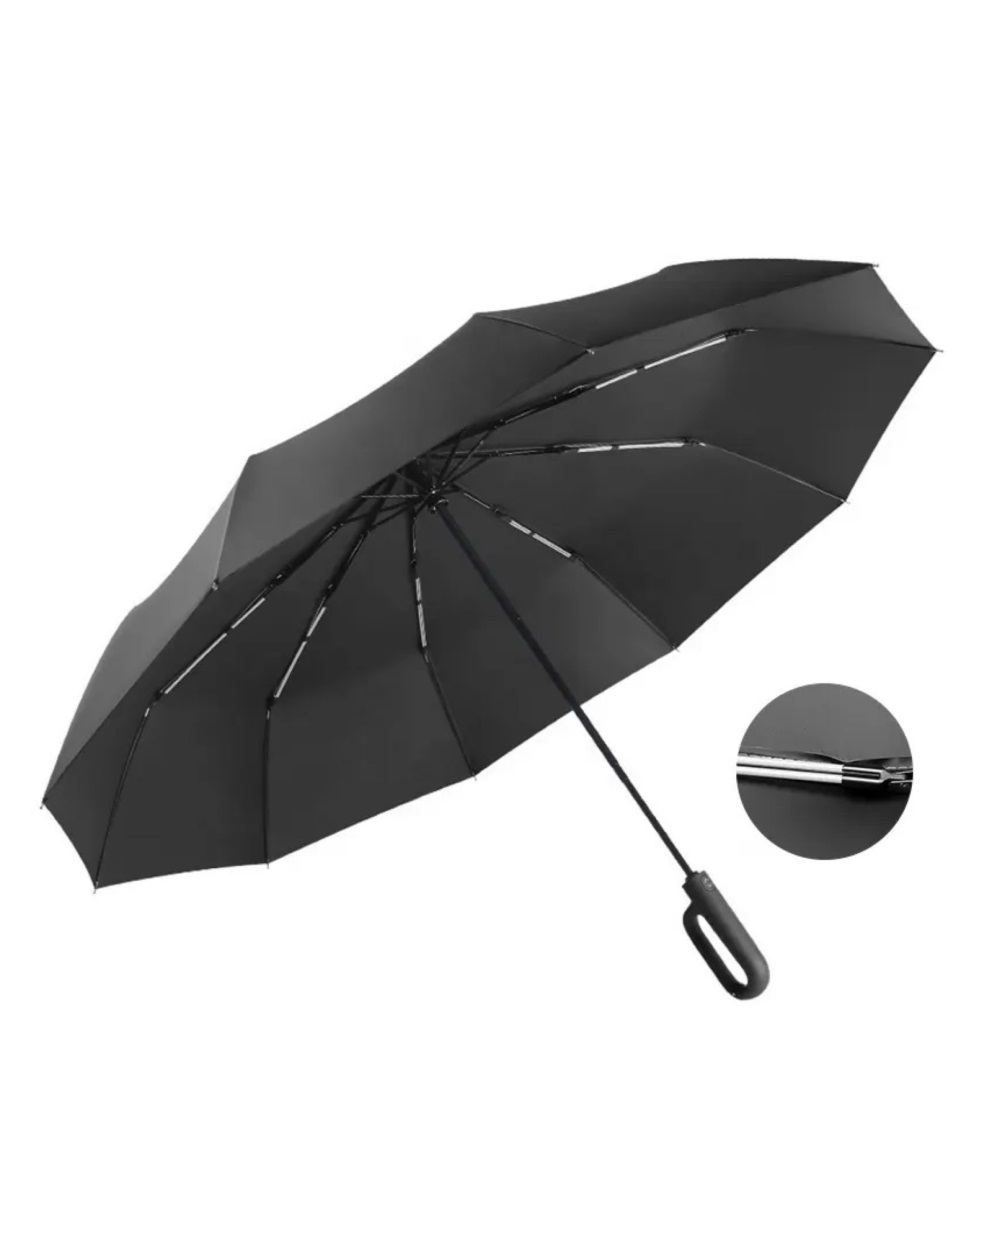 3foldumbrella cliphandle black front 1